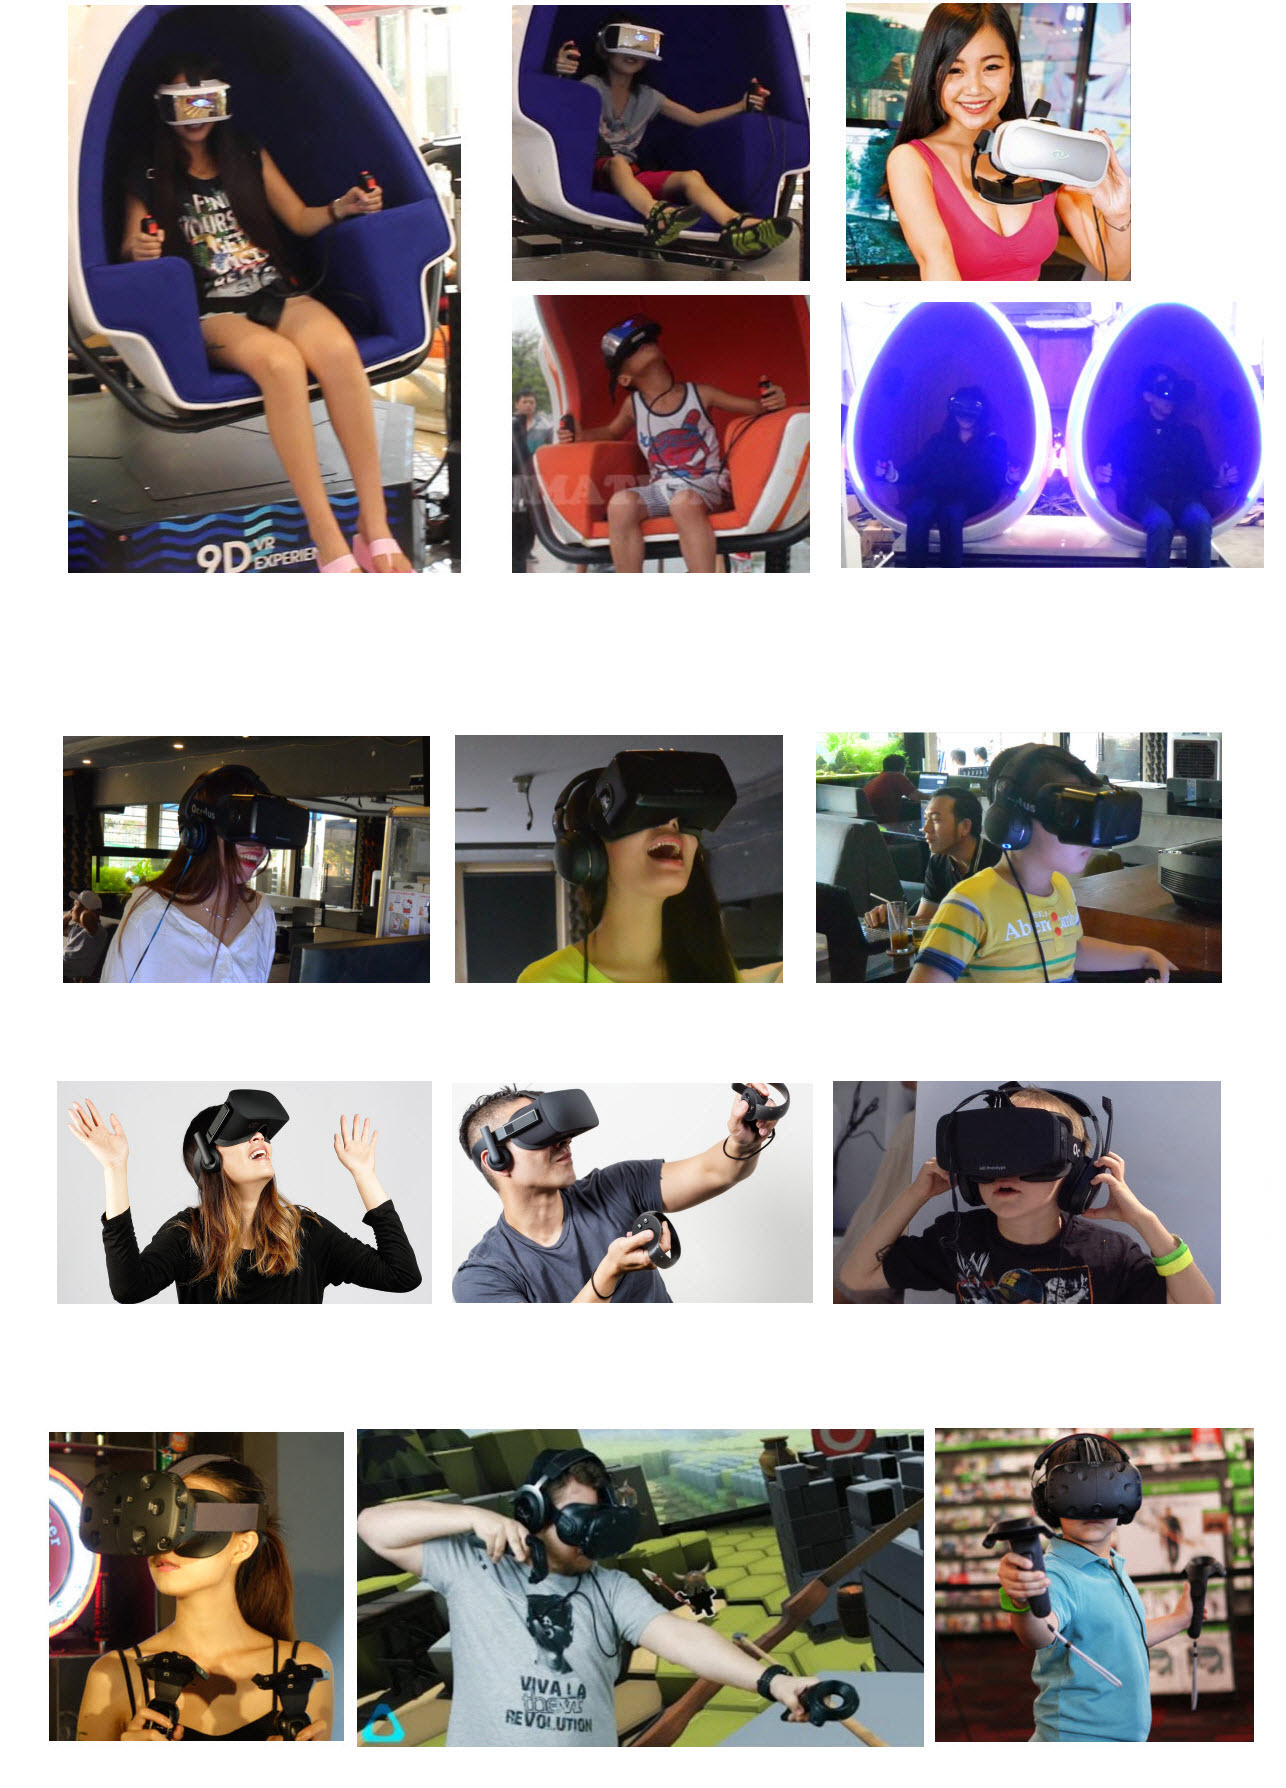 Lắp Đặt Hệ Thống Thực Tế Ảo 9D cho Kinh Doanh - Oculus - HTC - Gear VR - Playstation VR - 3